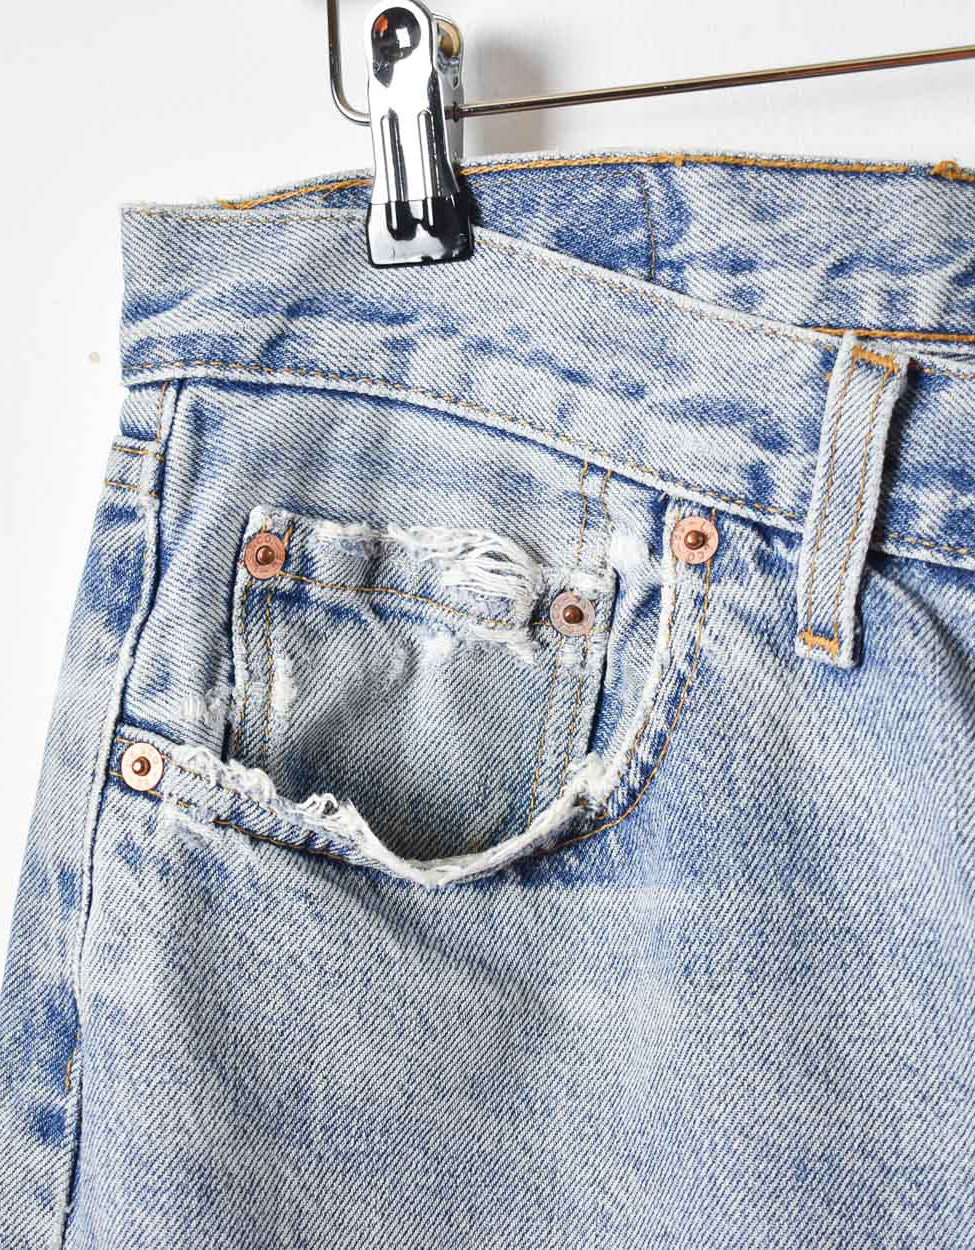 Blue Levi's Distressed Cut-off Jean Shorts - W32 L26